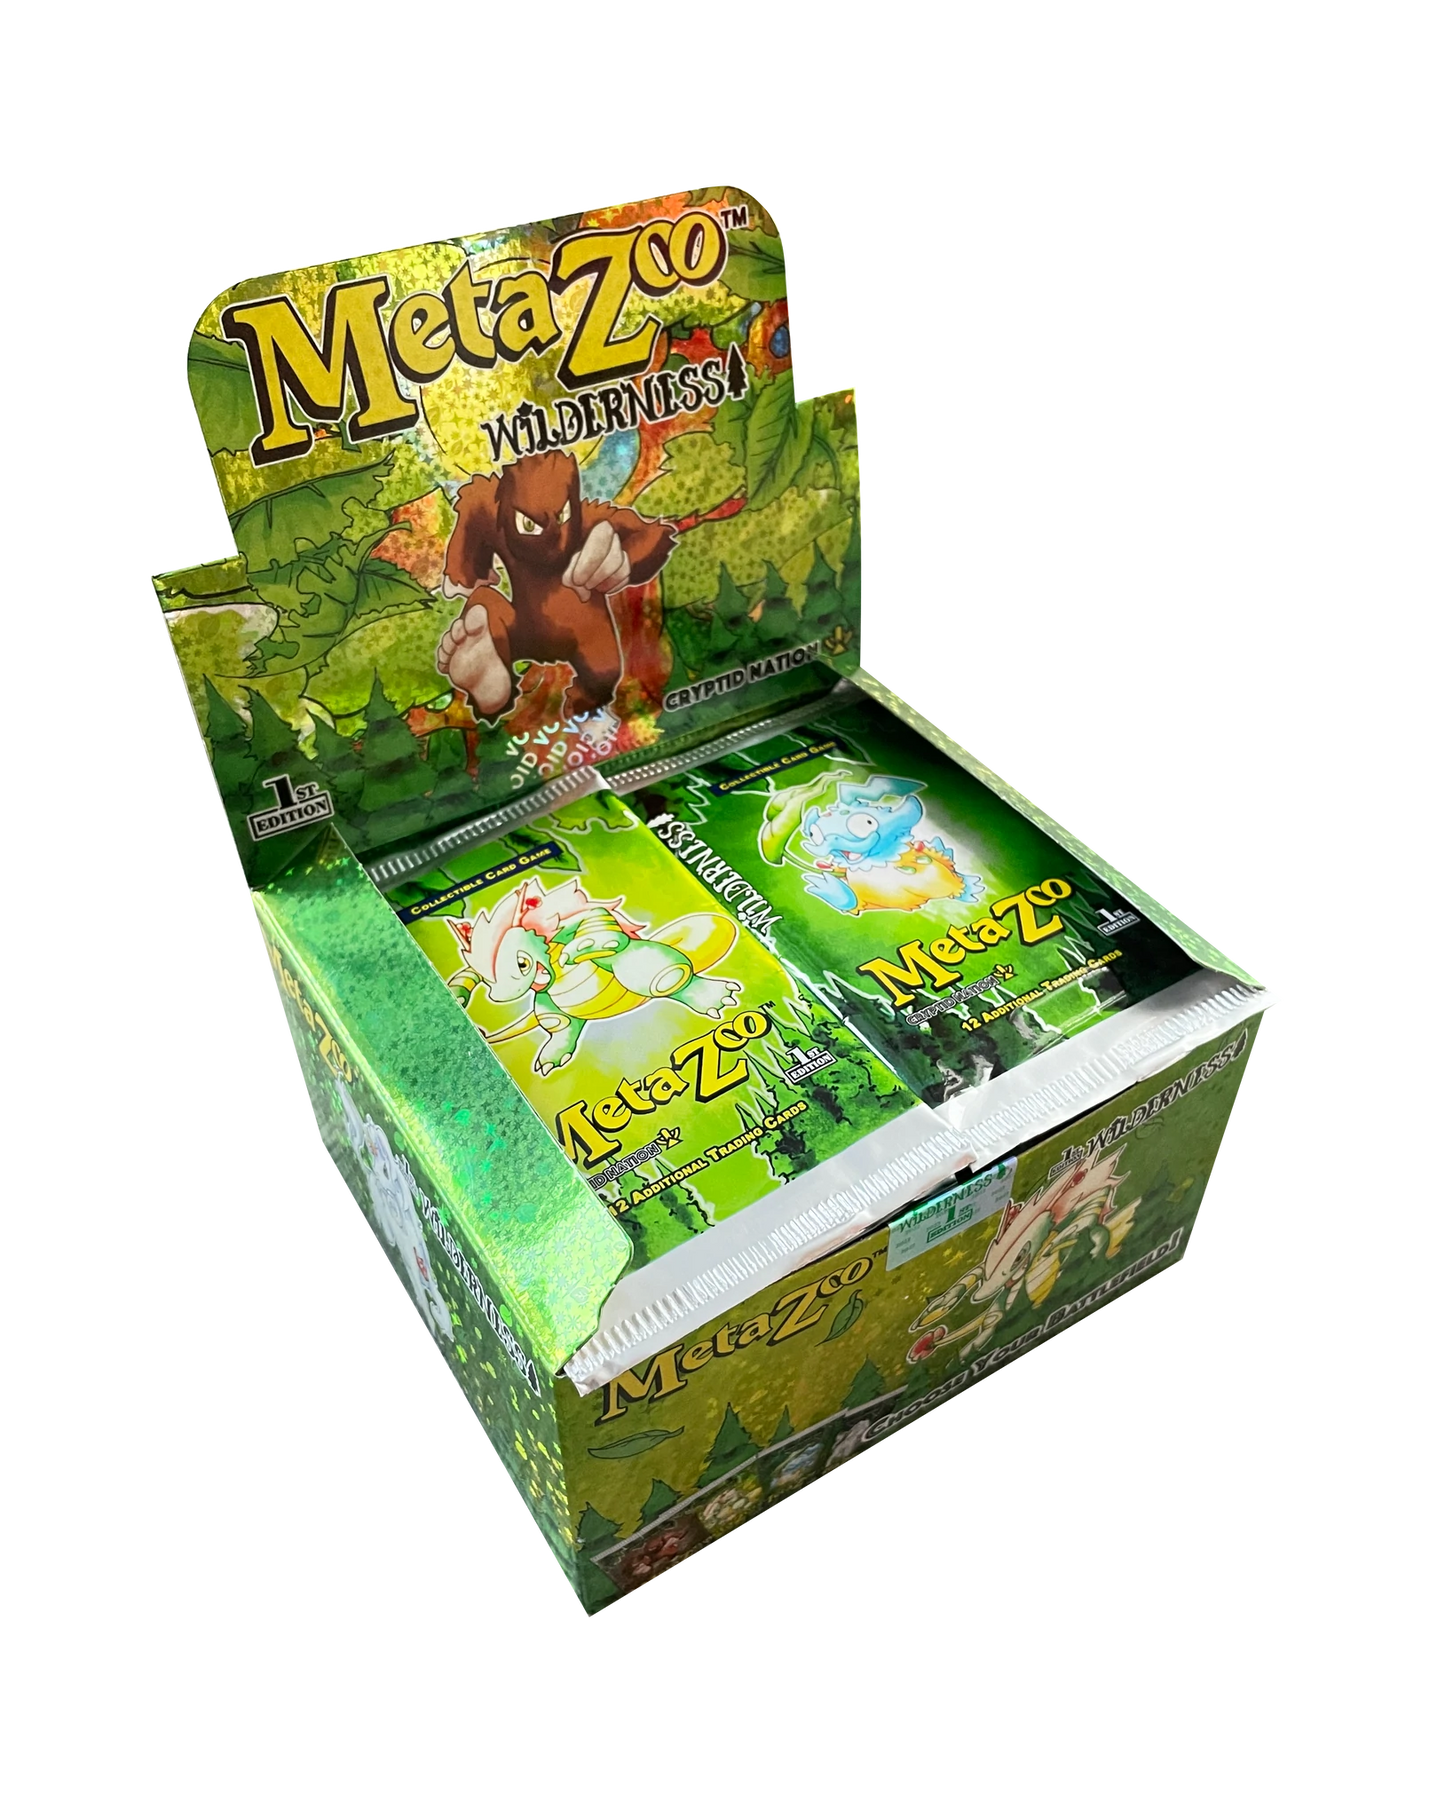 MetaZoo TCG: Wilderness 1st Edition Booster Display (36 packs) - EN